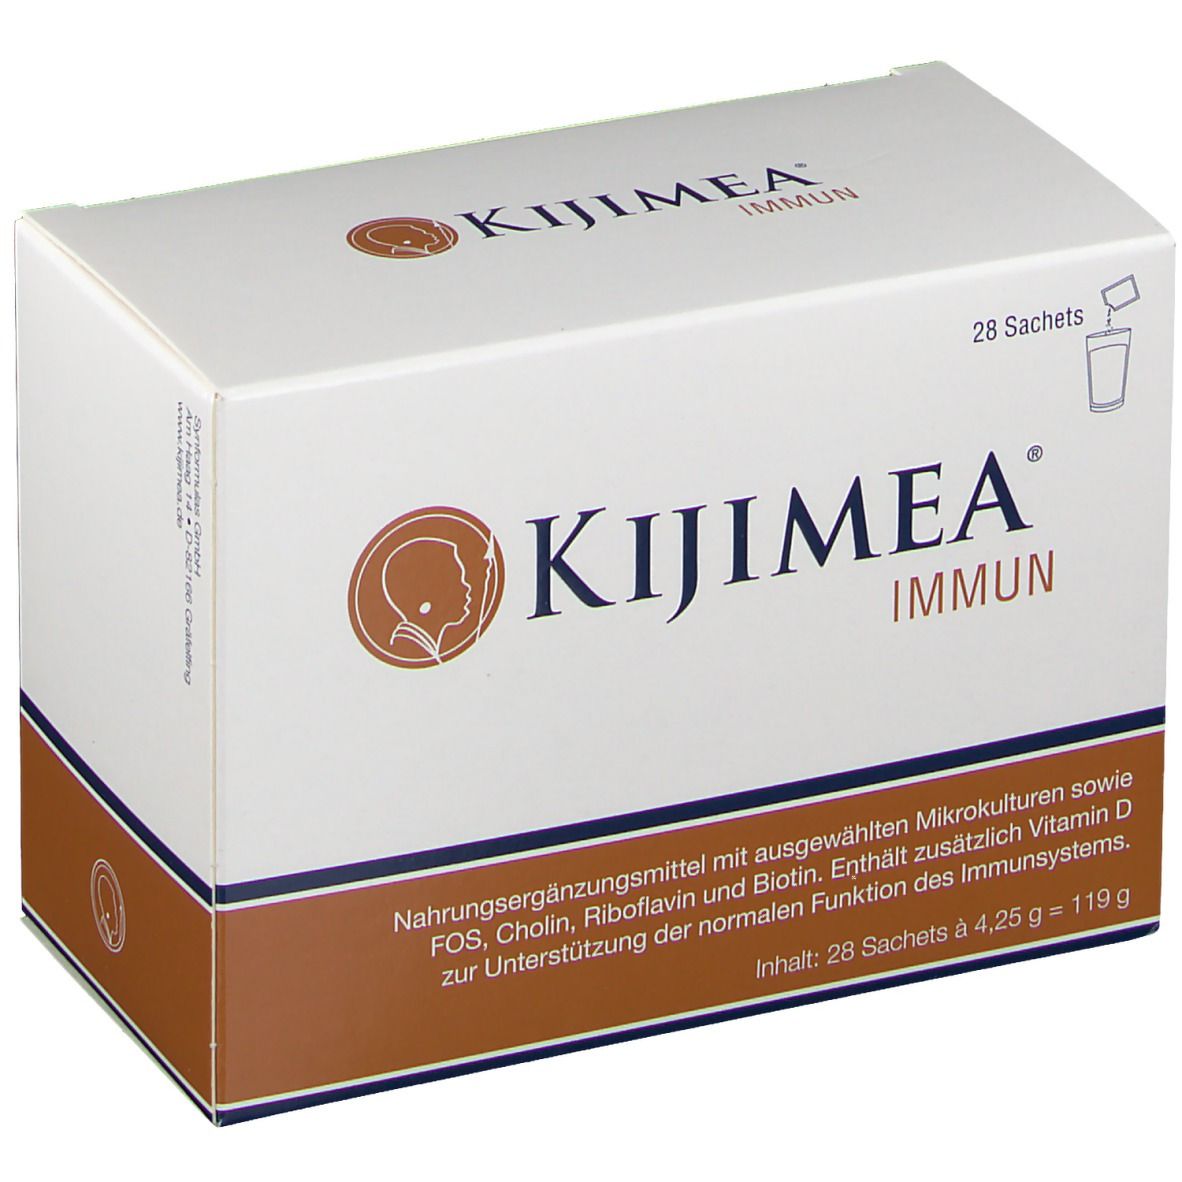 Image of Kijimea® Immun